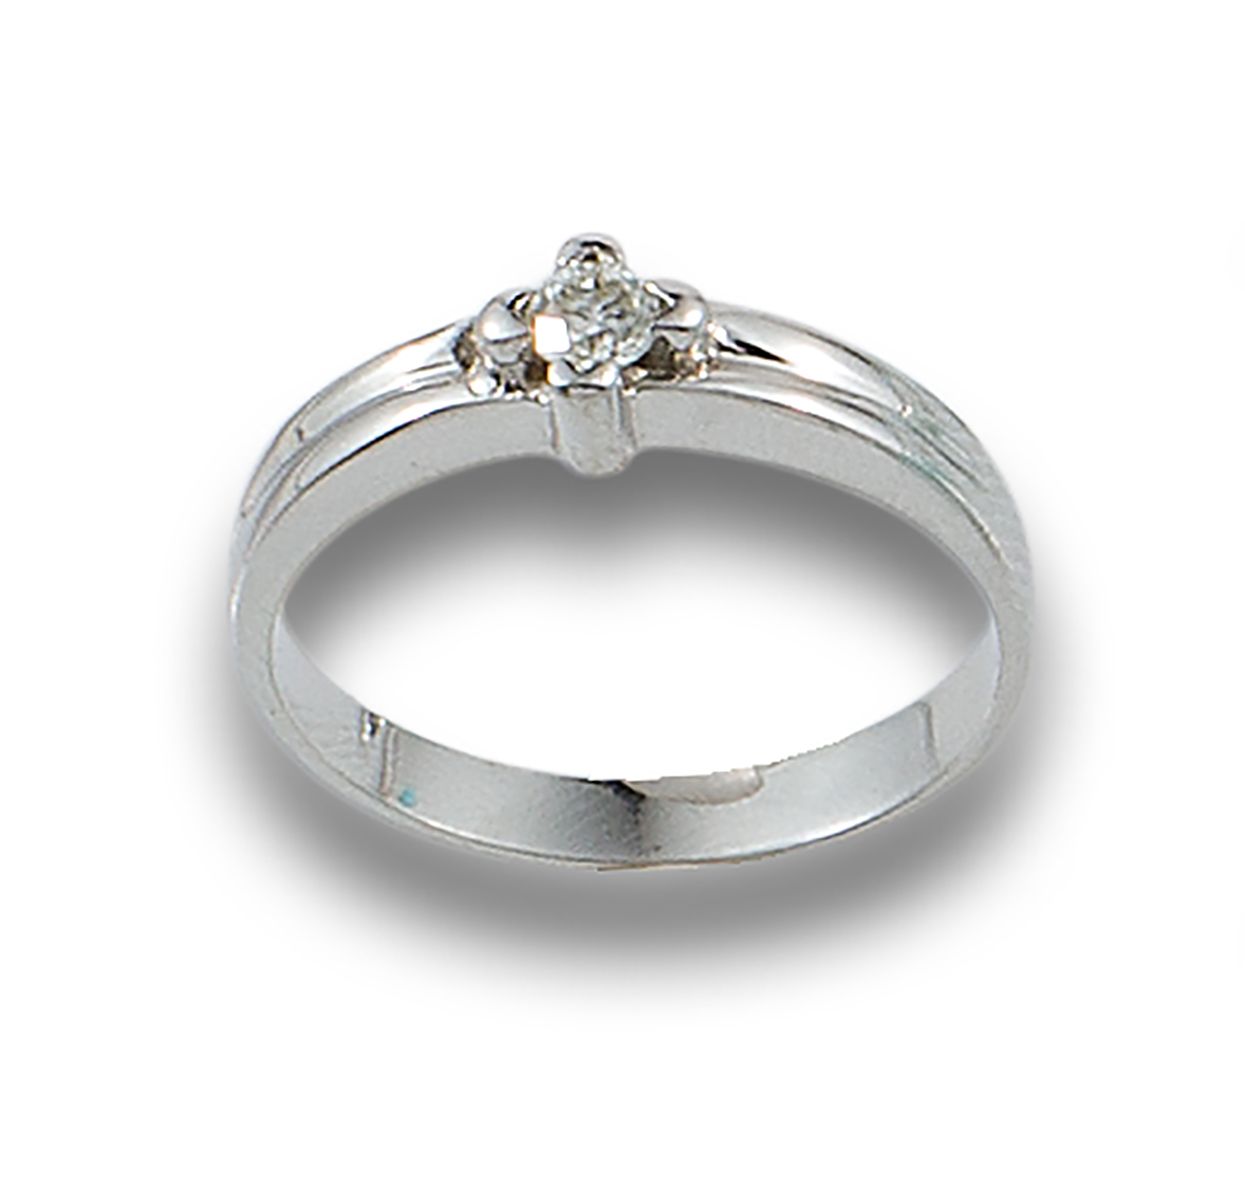 18 kt white gold solitaire ring. Geformt durch einen Diamanten im Brillantschlif&hellip;